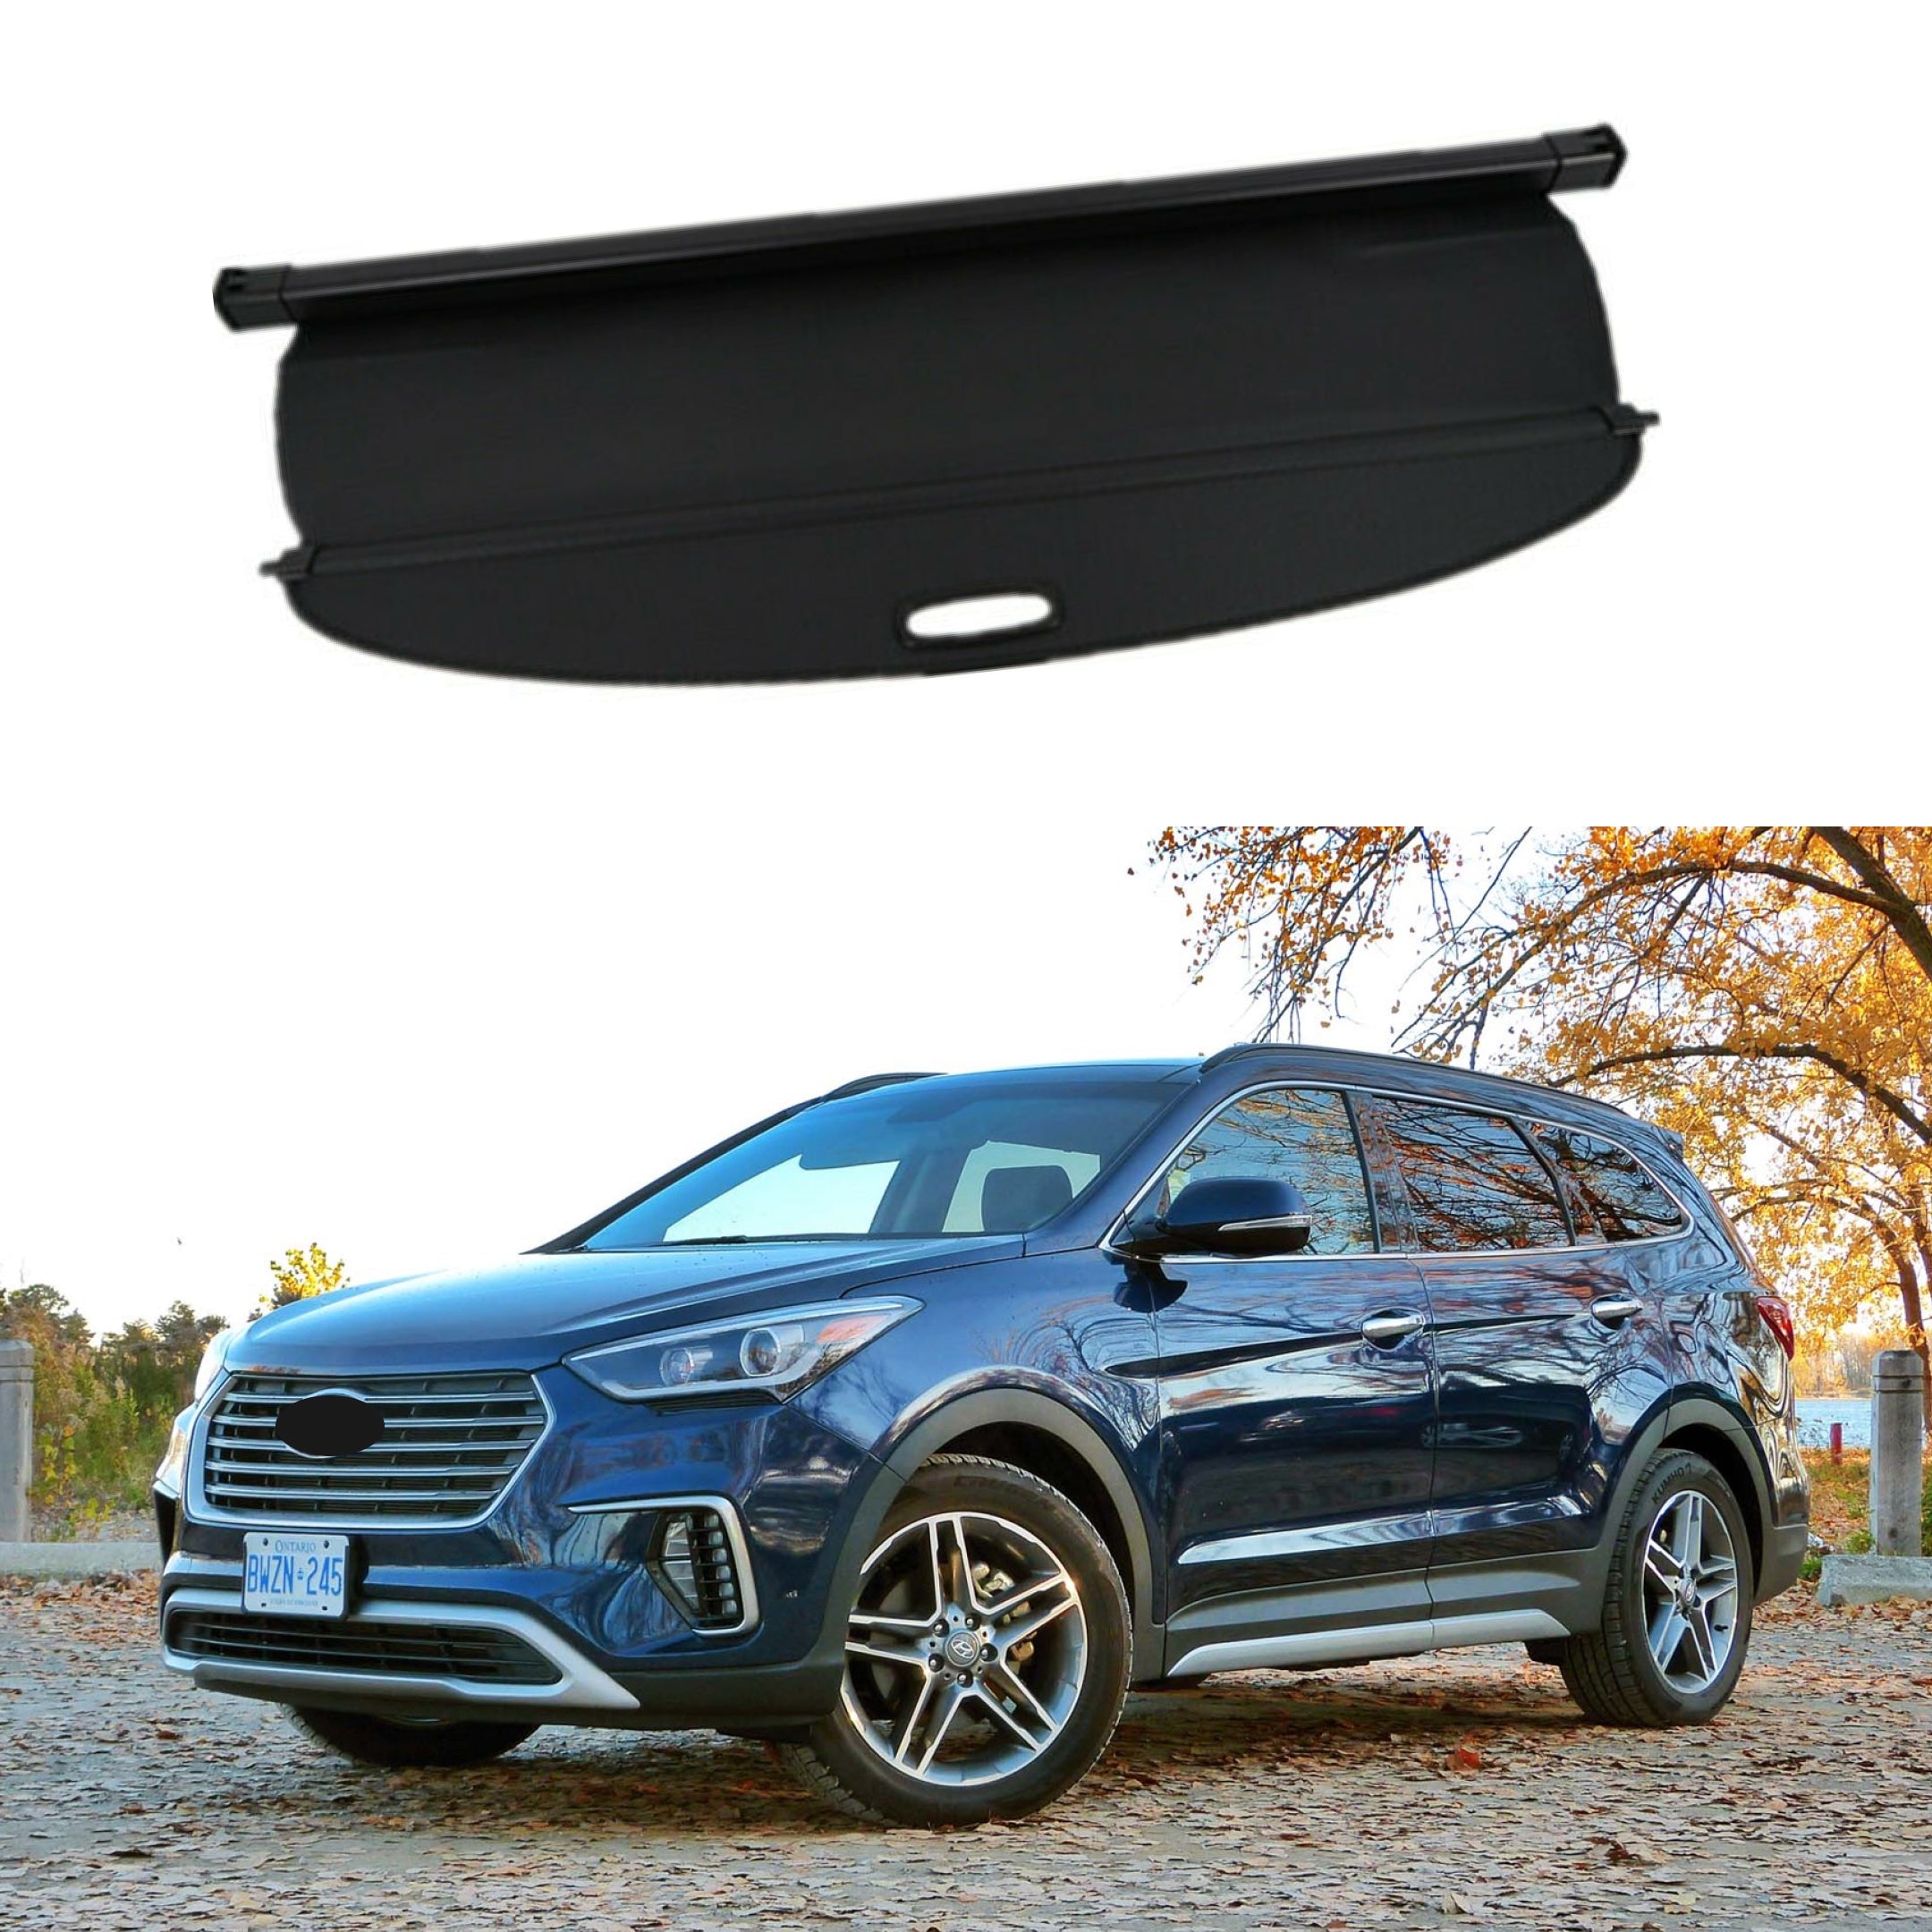 For Hyundai Santa Fe / XL 2013-2018 Rear Trunk Retractable Tonneau Cargo Cover (Black)